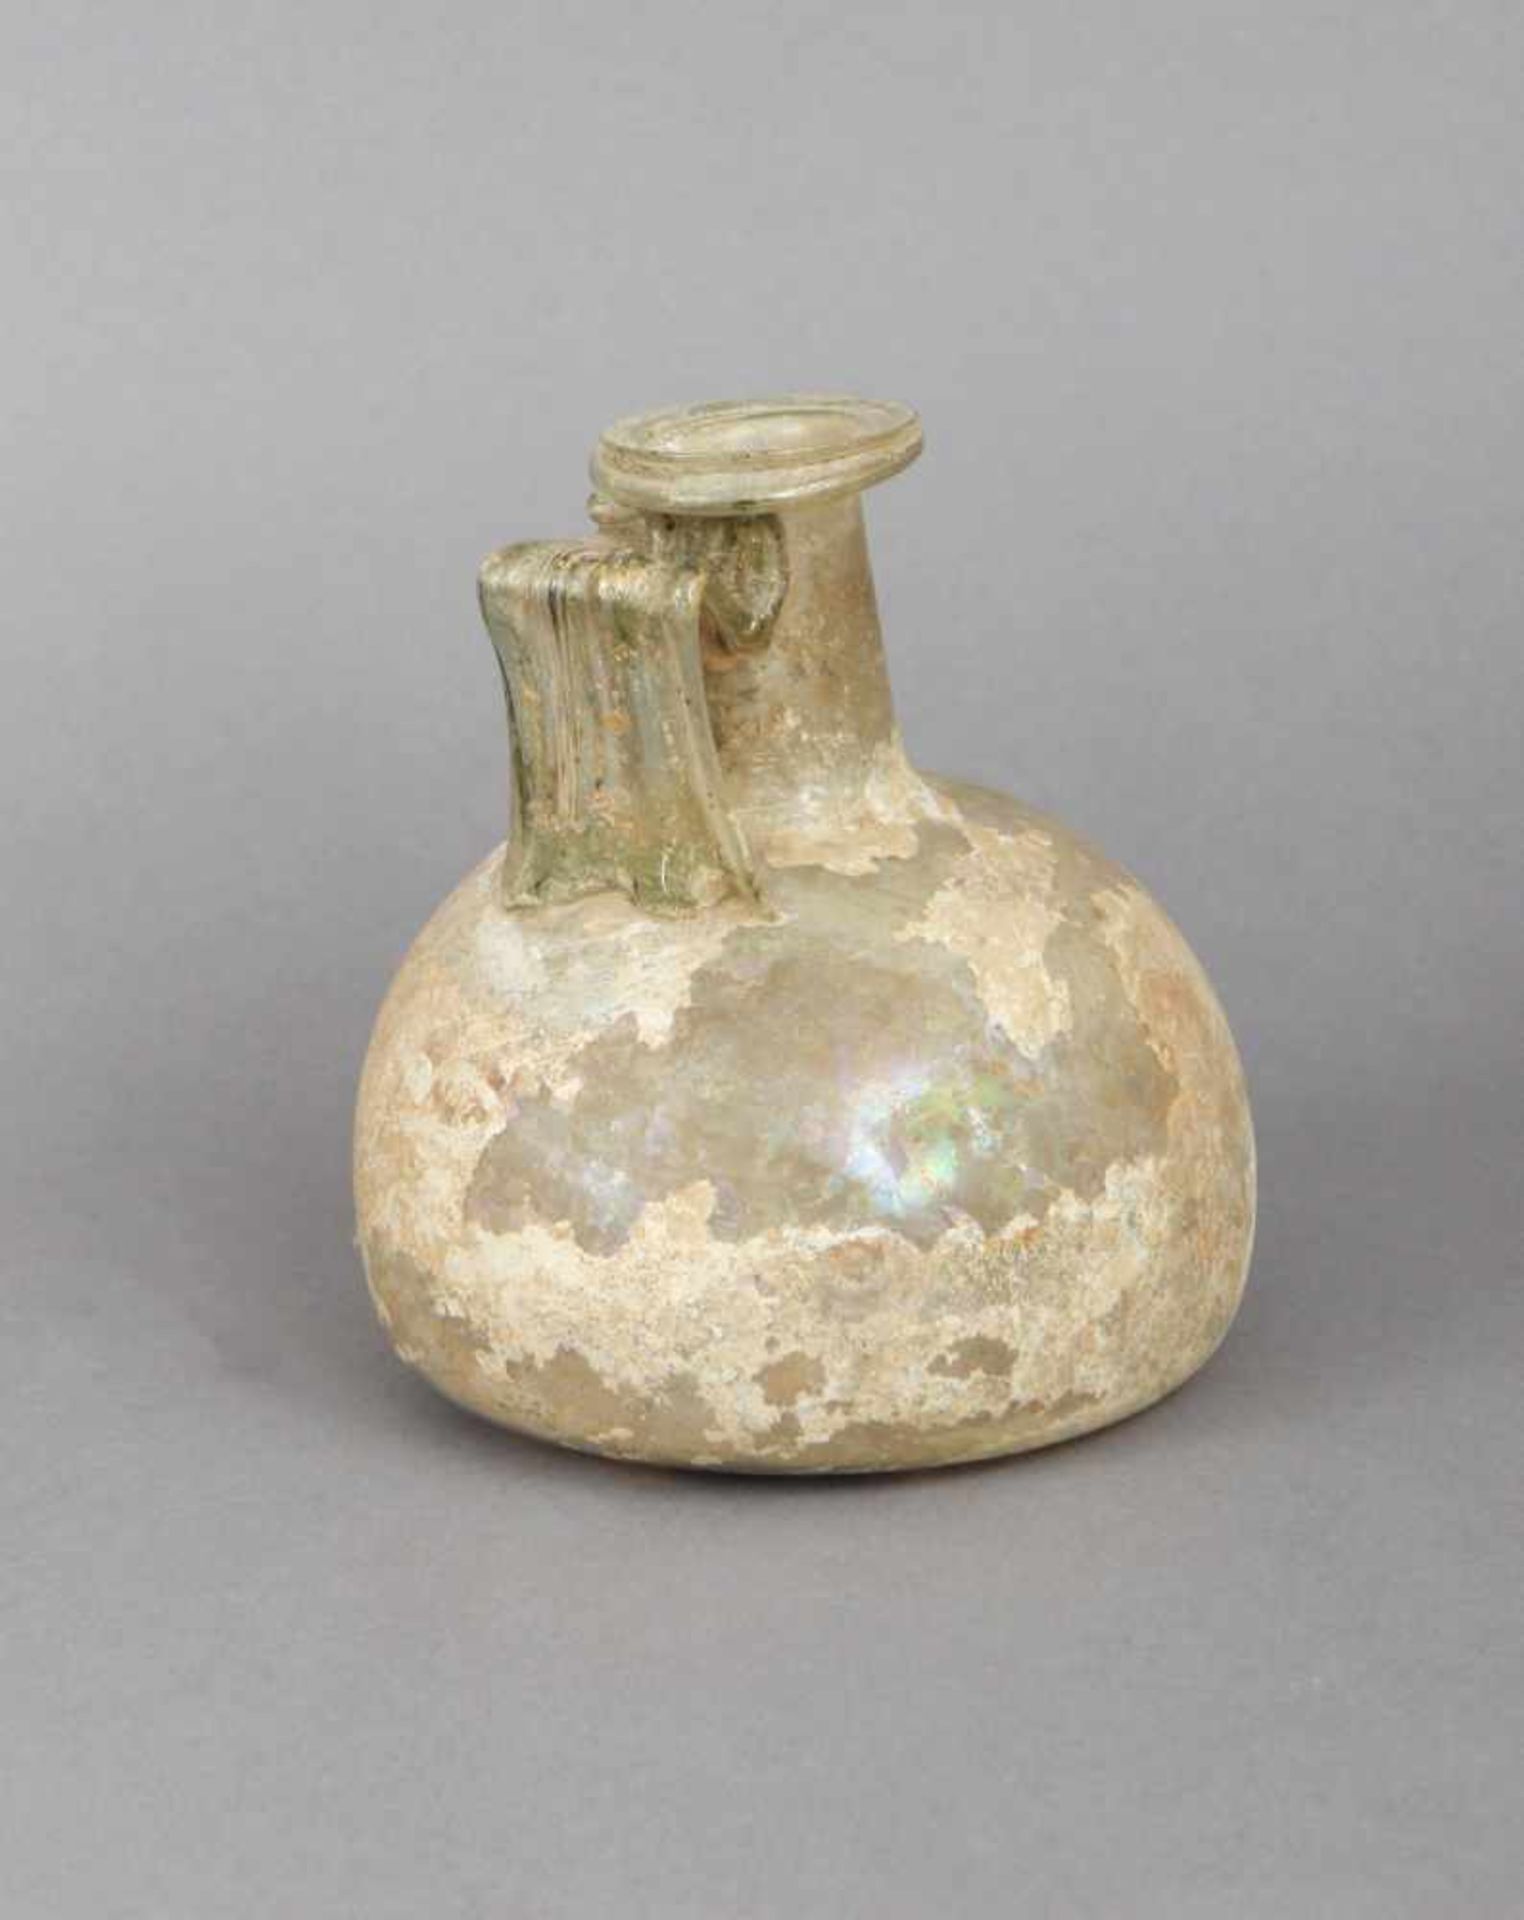 Antike römische Glasflaschewohl 200 n. Chr., kugelförmiges Gefäß mit zylindrischem Hals und sei - Bild 2 aus 2